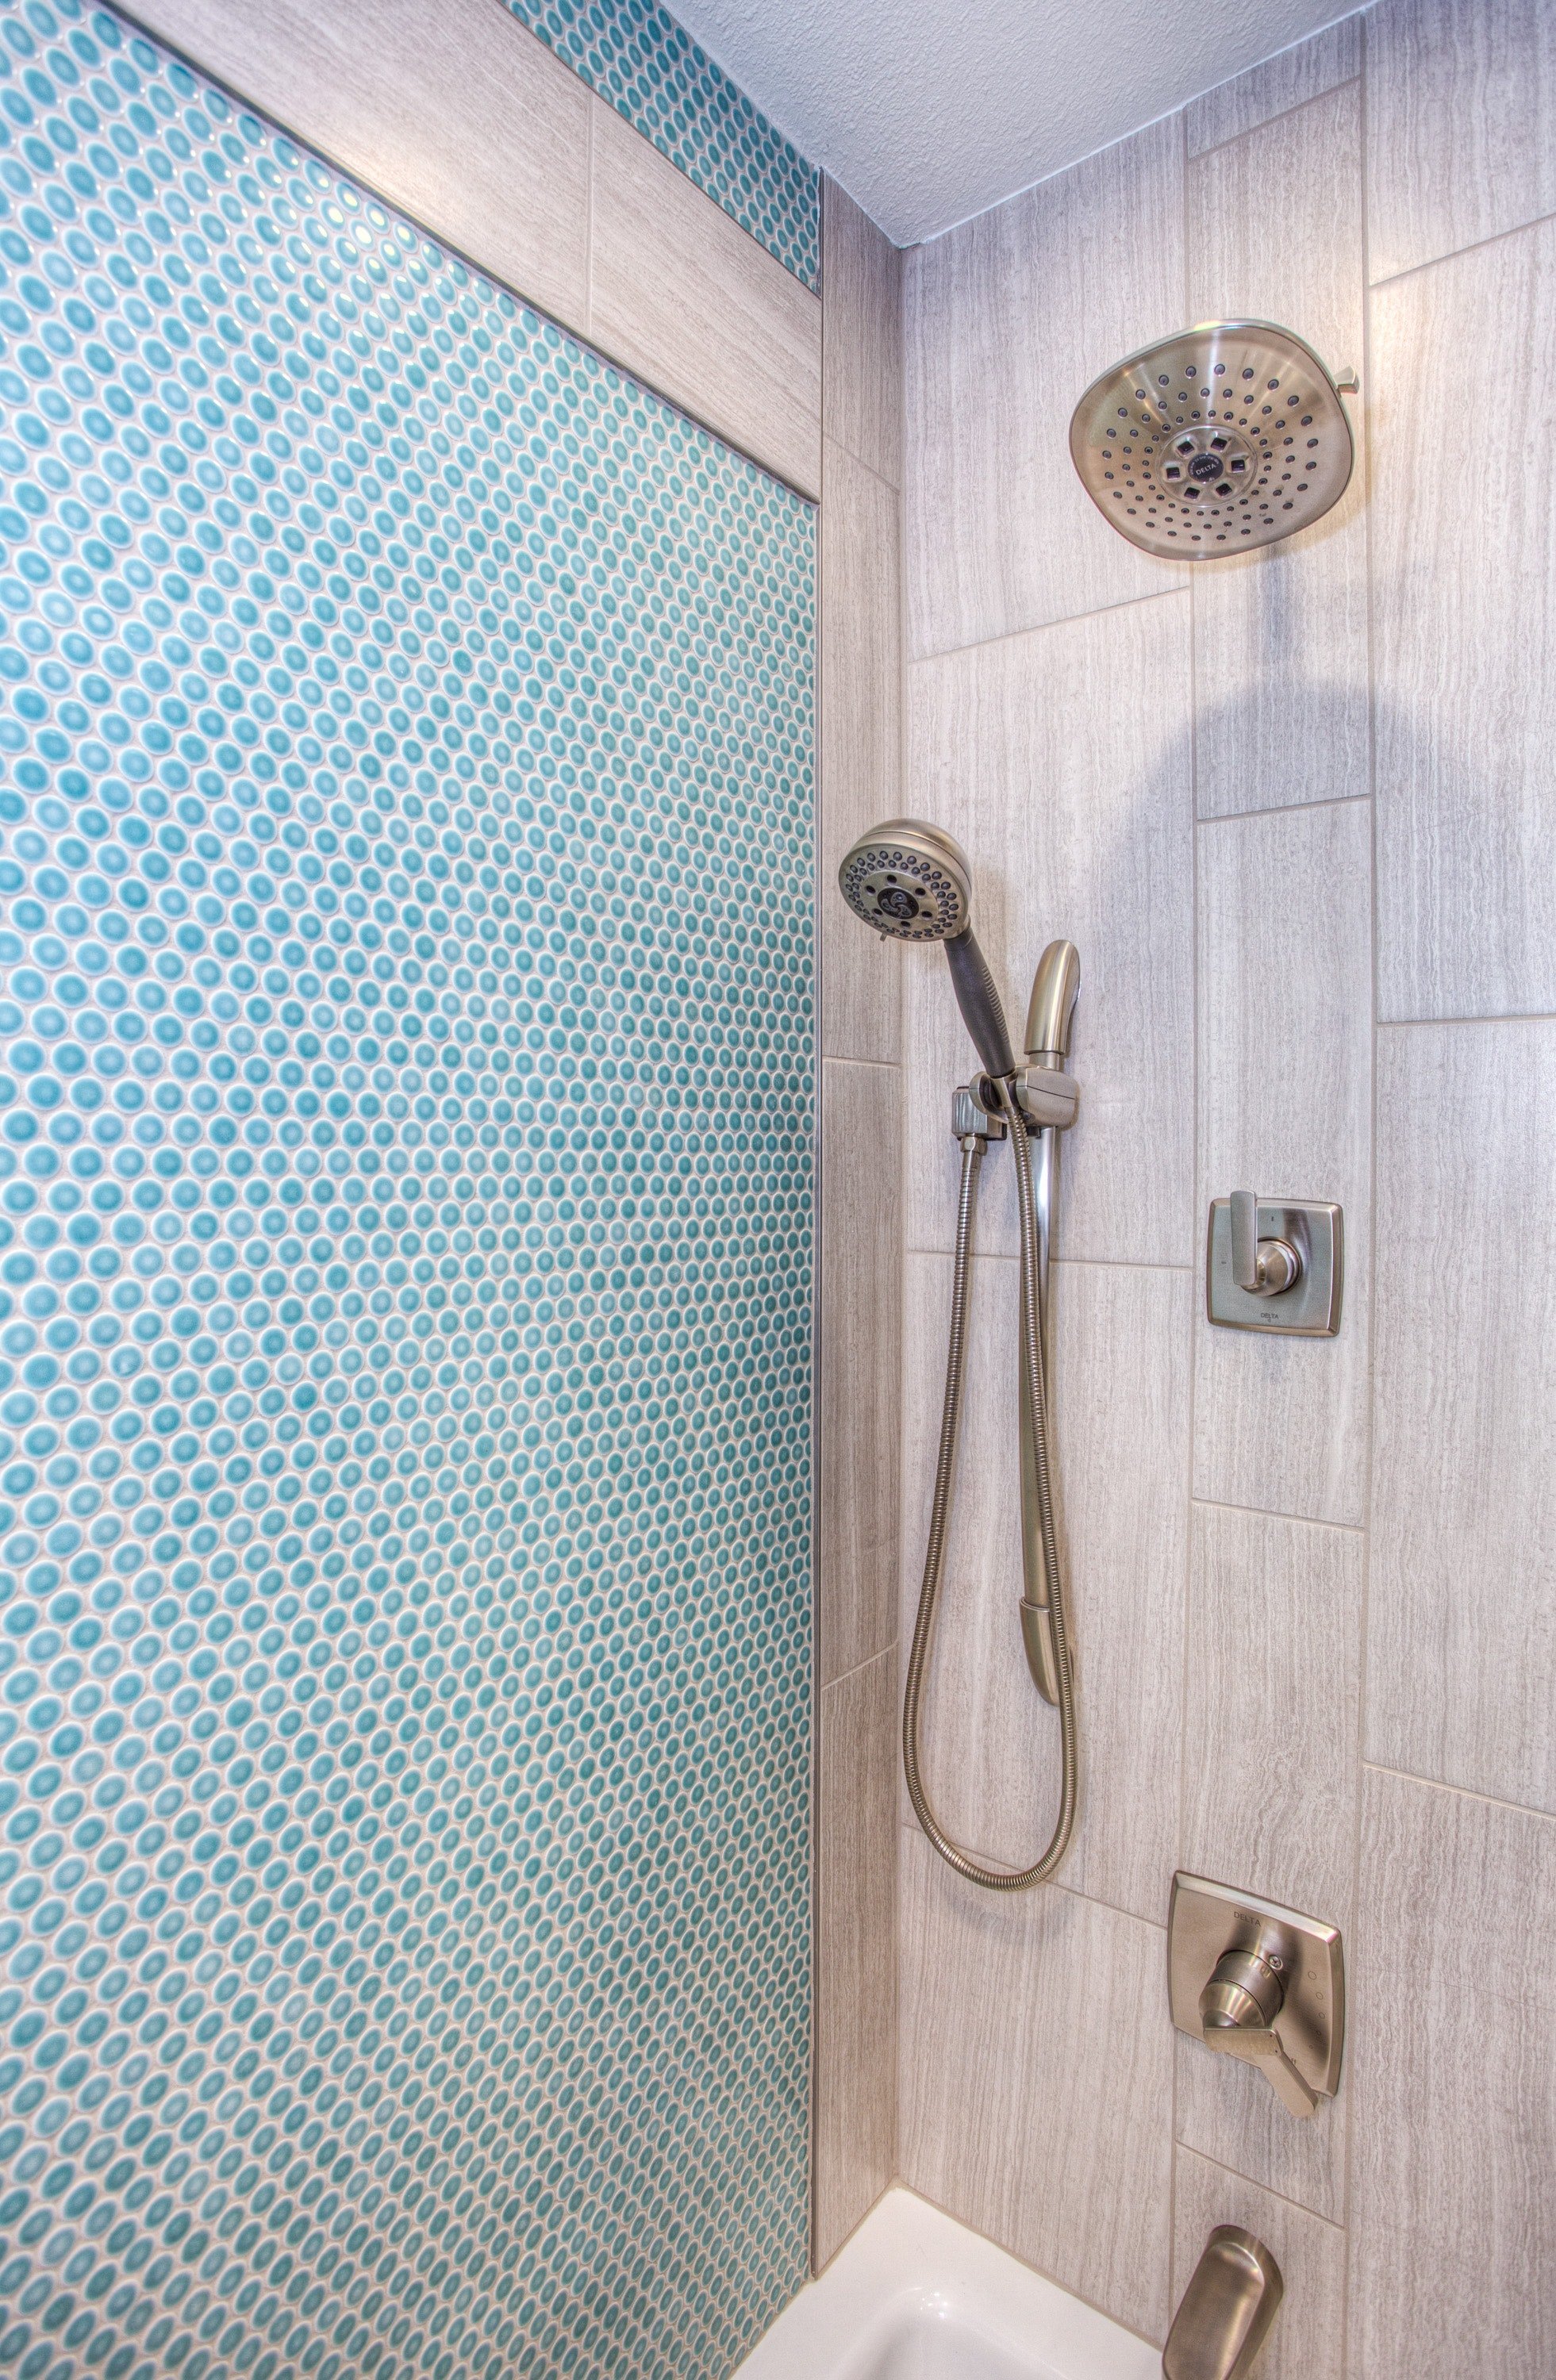 Una ducha de mano colgada en una pared dentro de un baño. | Foto: Pexels